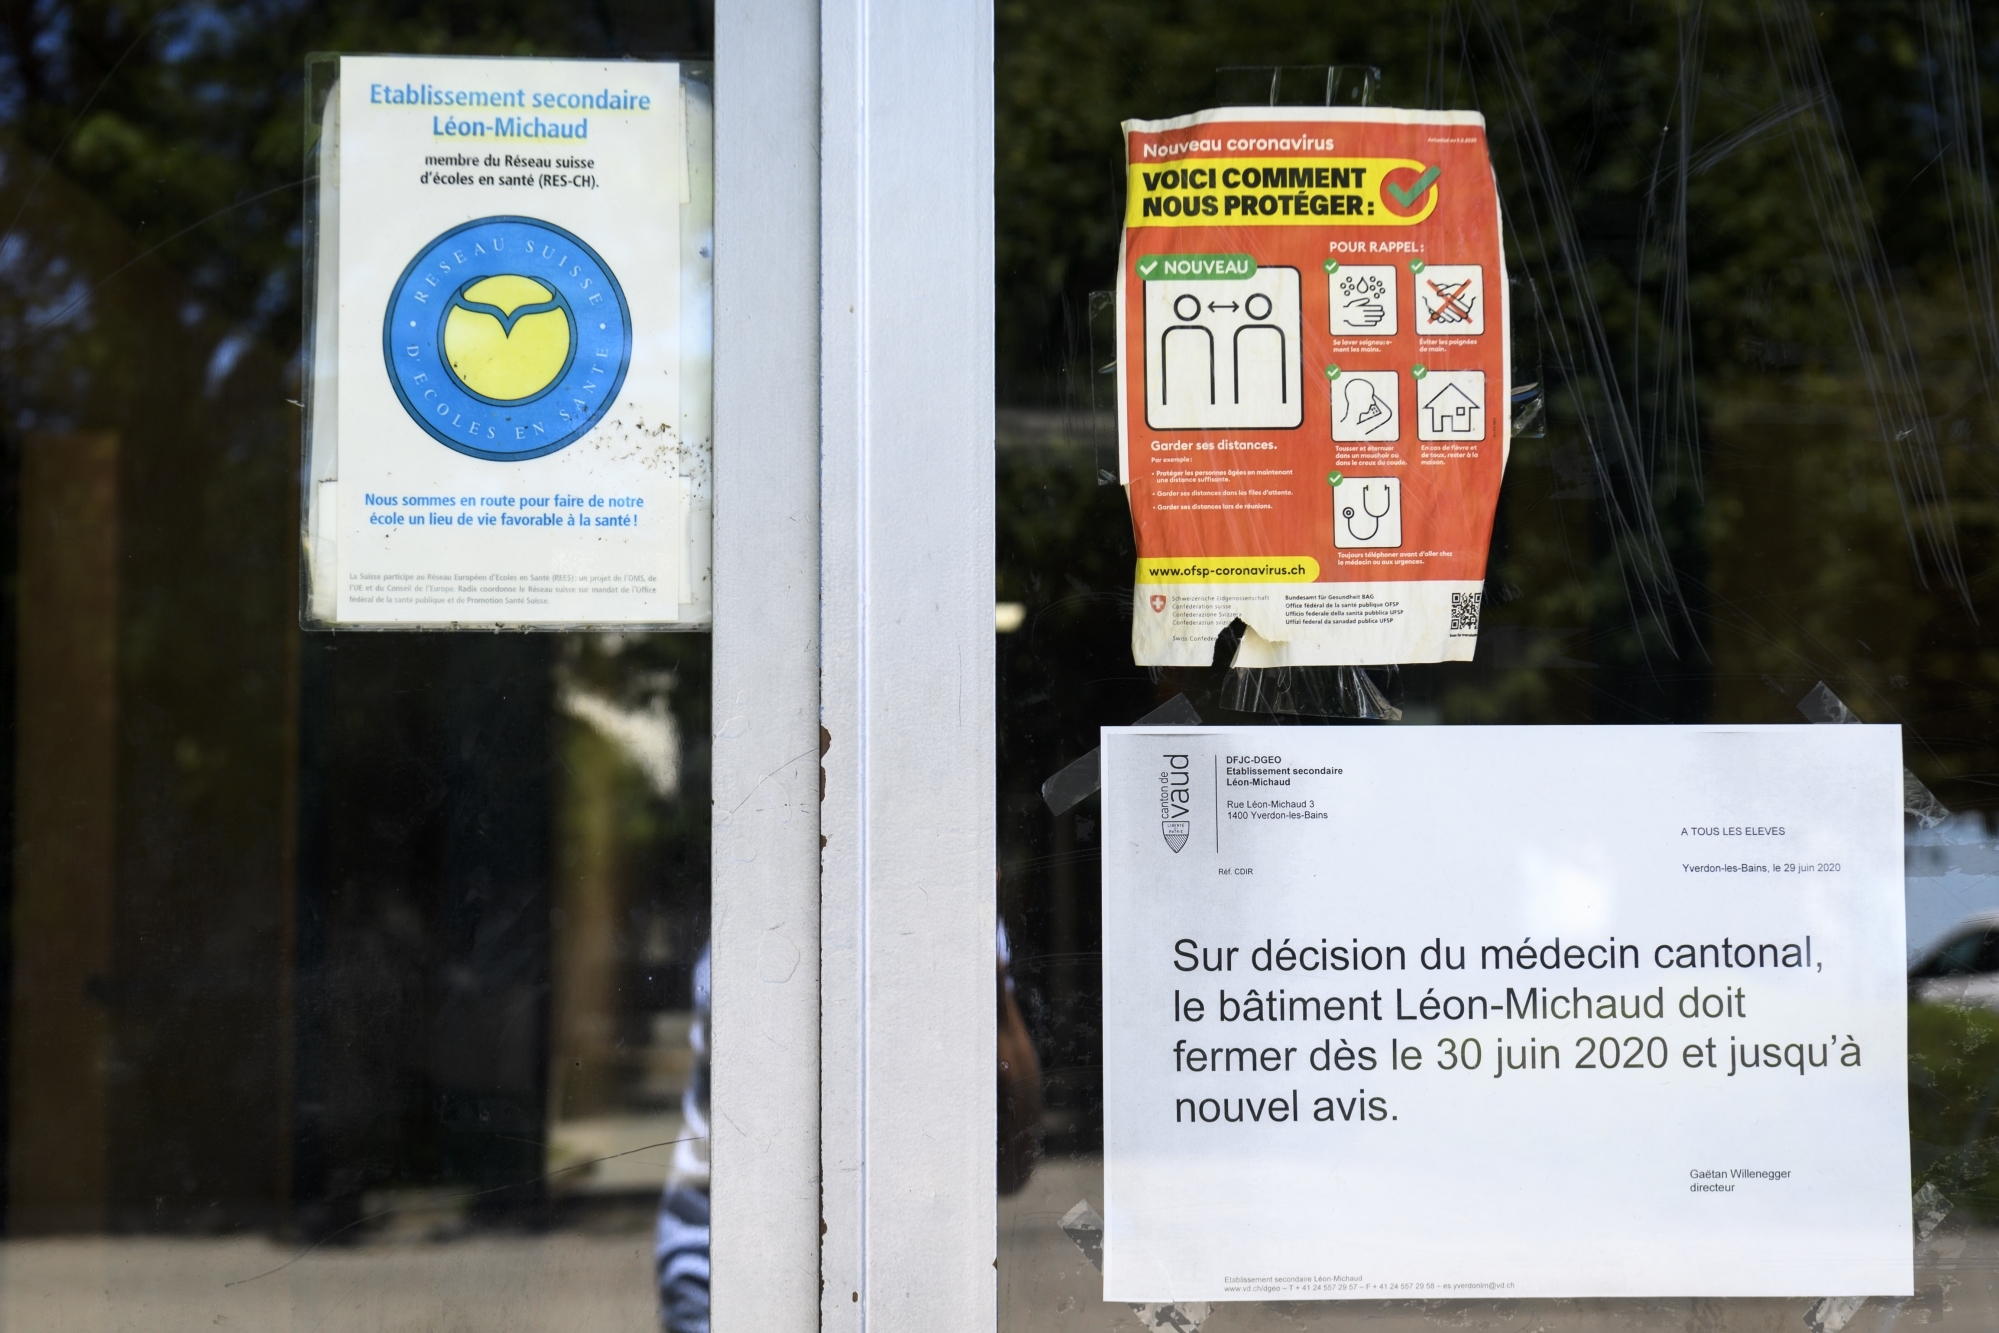 Les bâtiments de l’établissement secondaire Léon-Michaud ferment avec effet immédiat suite a deux cas de coronavirus (covid-19) ce mardi 30 juin 2020 a Yverdon-les-bains.